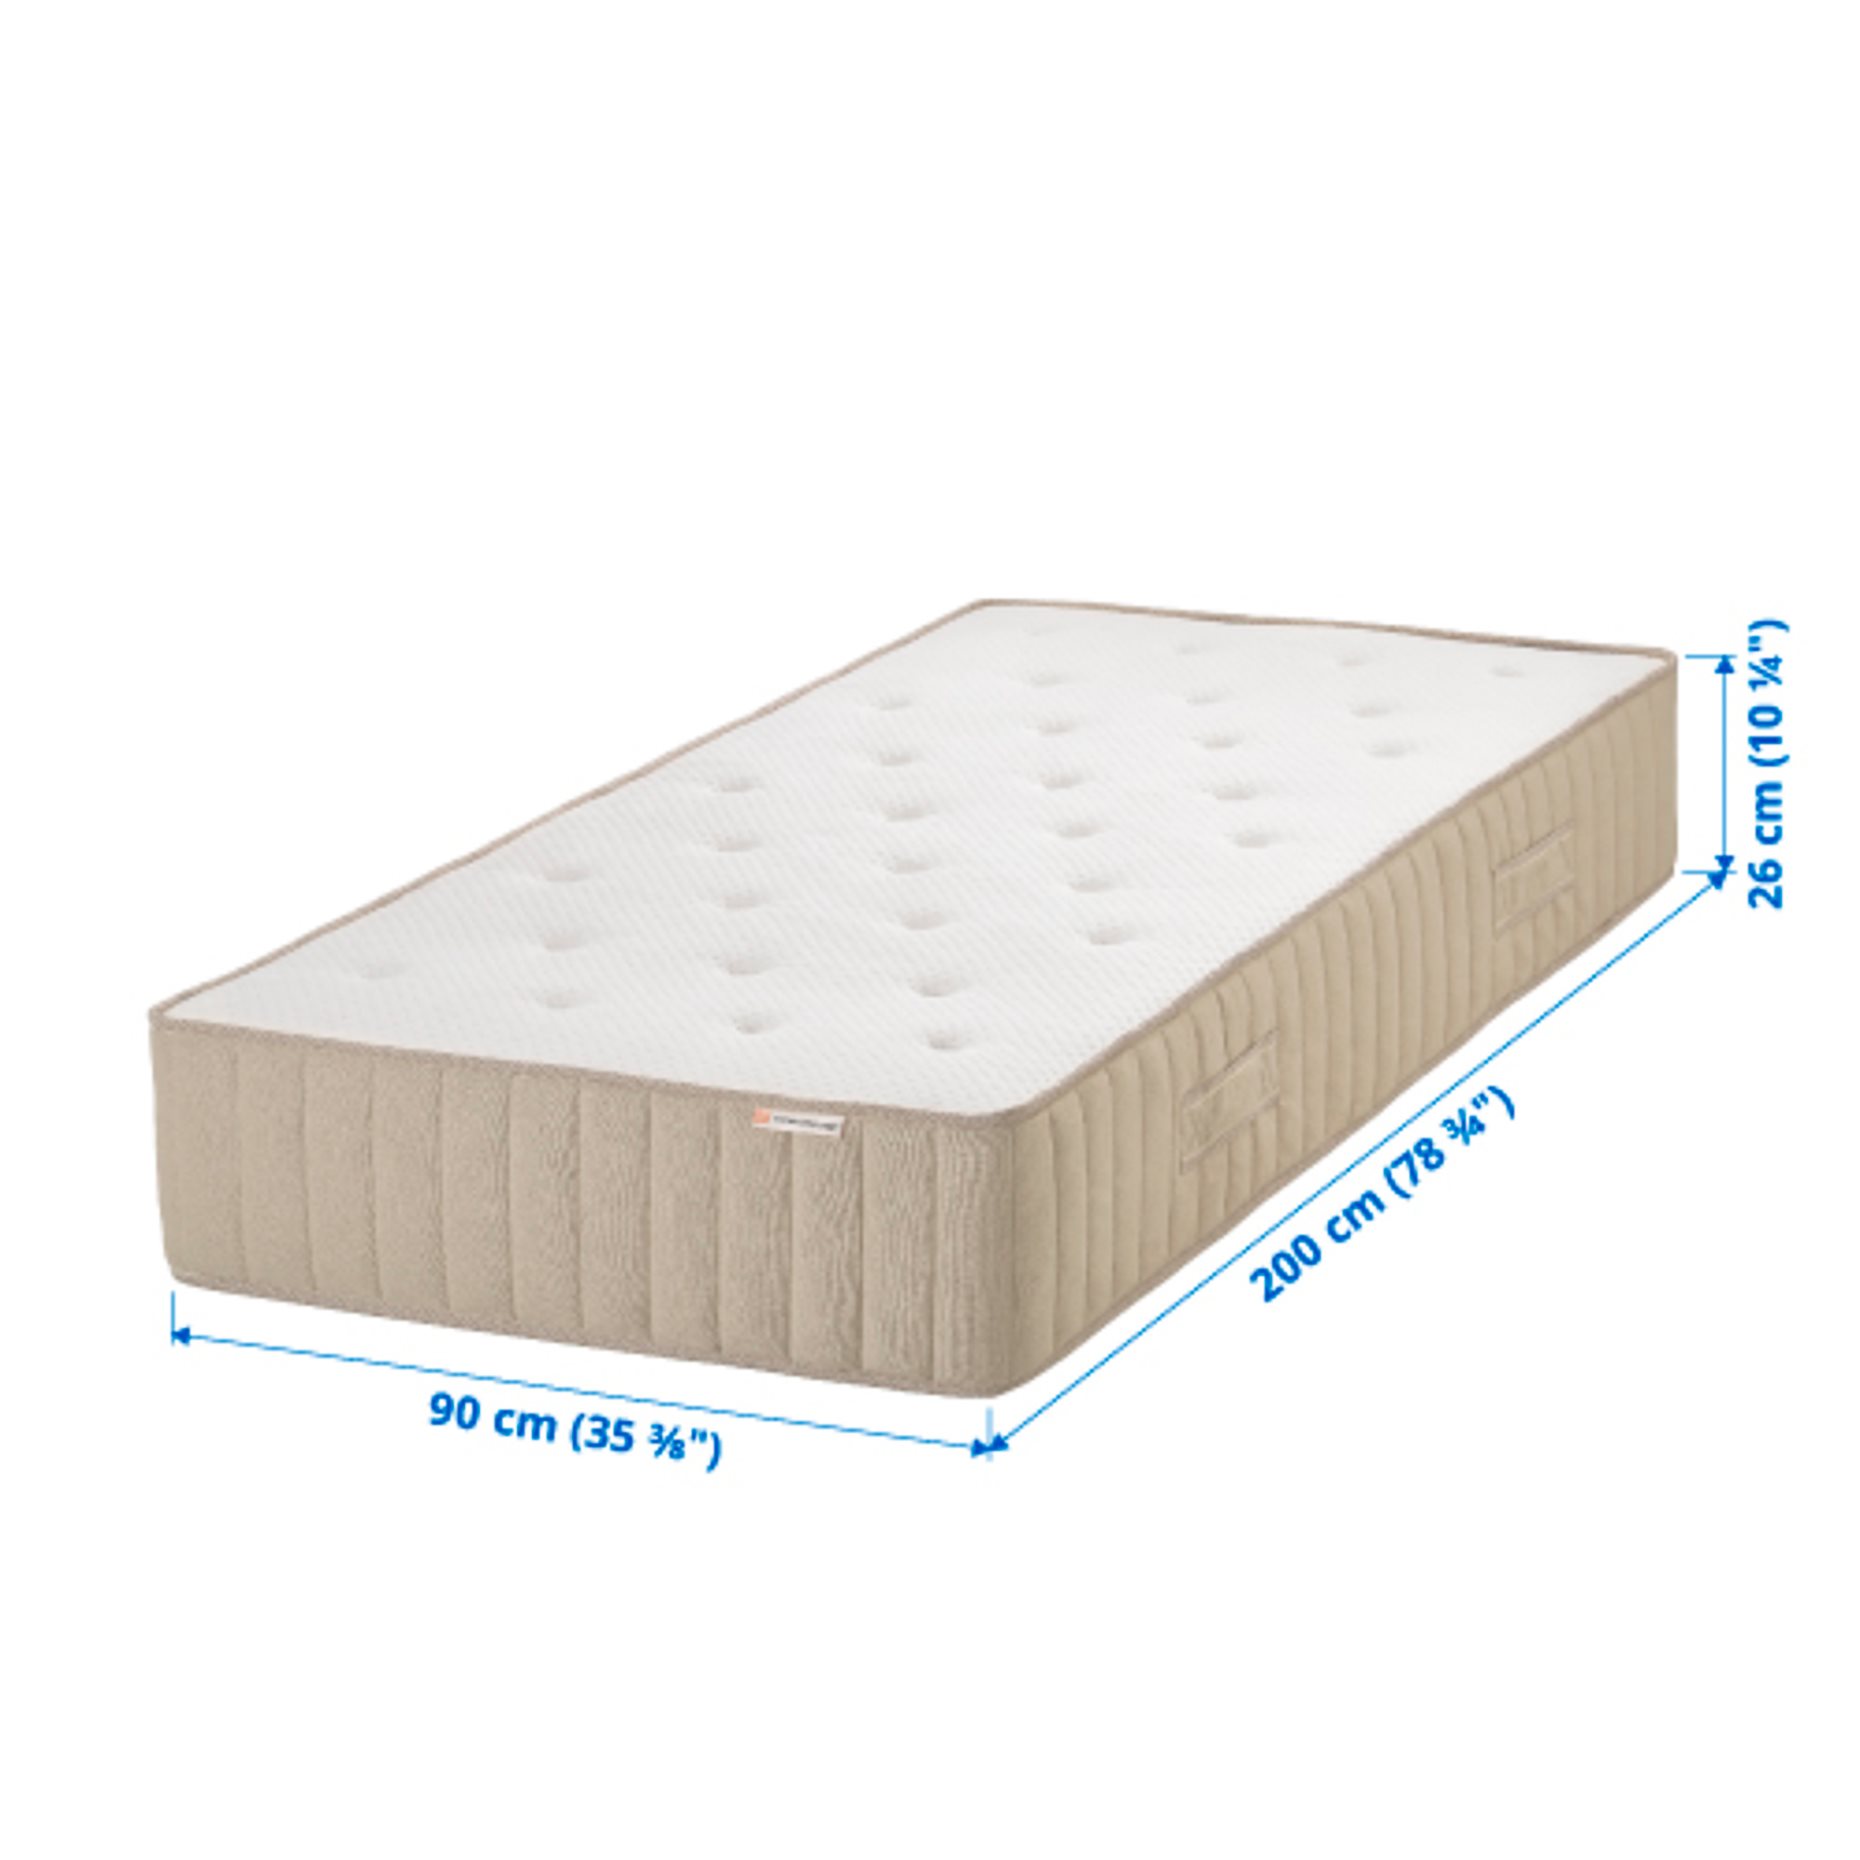 VATNESTRÖM, pocket sprung mattress, extra firm 90x200 cm, 204.784.87